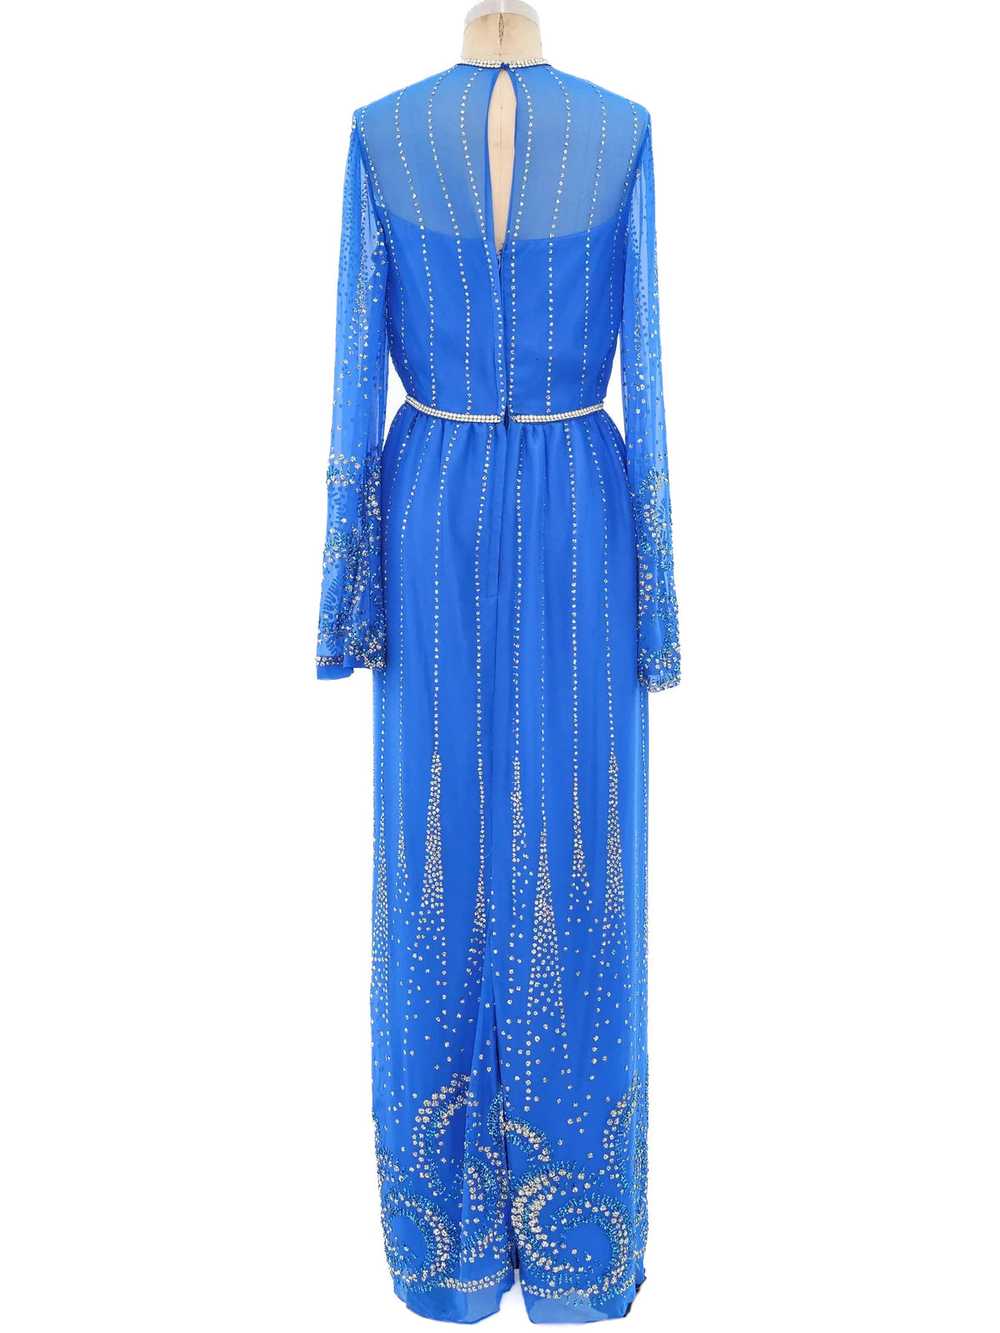 Glitter Embellished Blue Chiffon Maxi Dress - image 5